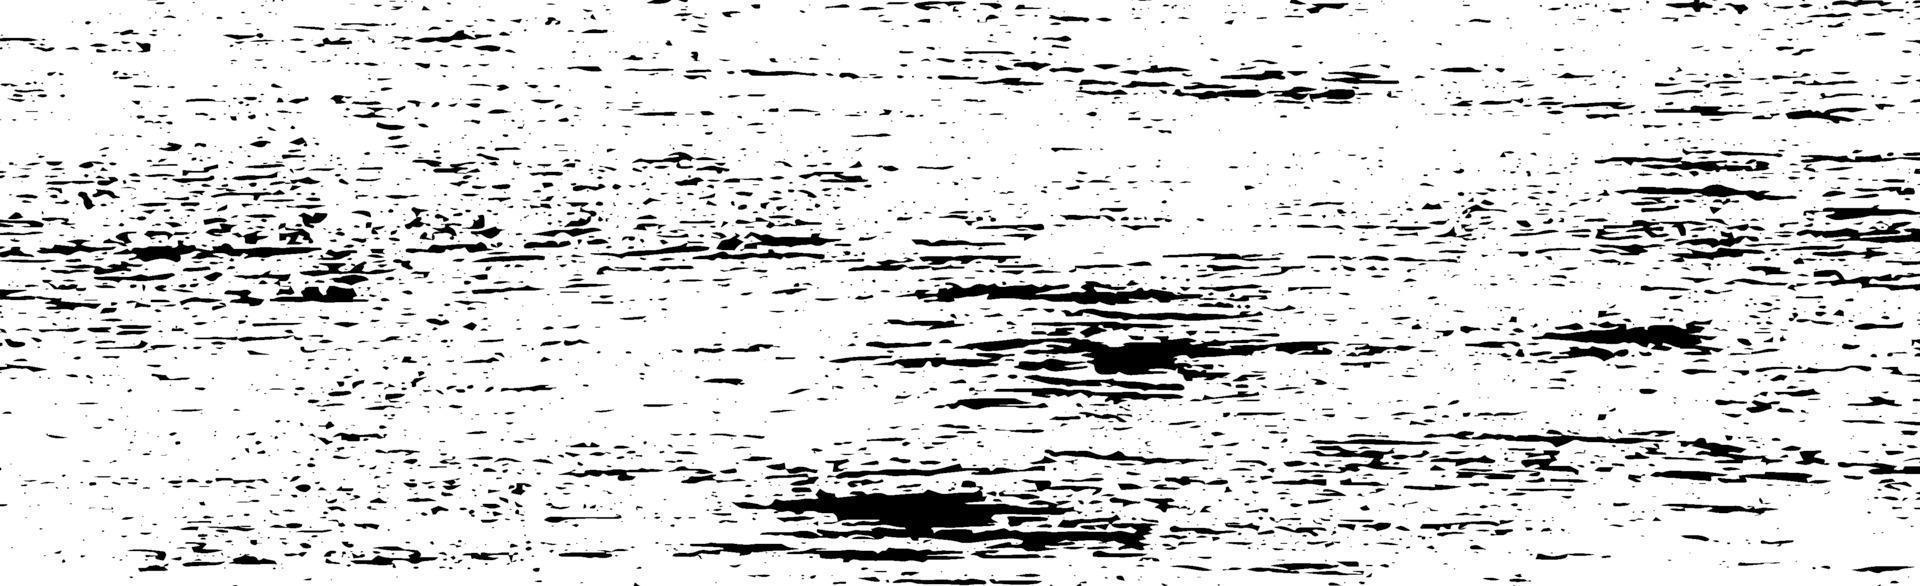 schwarze Linien und Punkte des Schmutzes auf einem weißen Hintergrund - Vektorillustration vektor